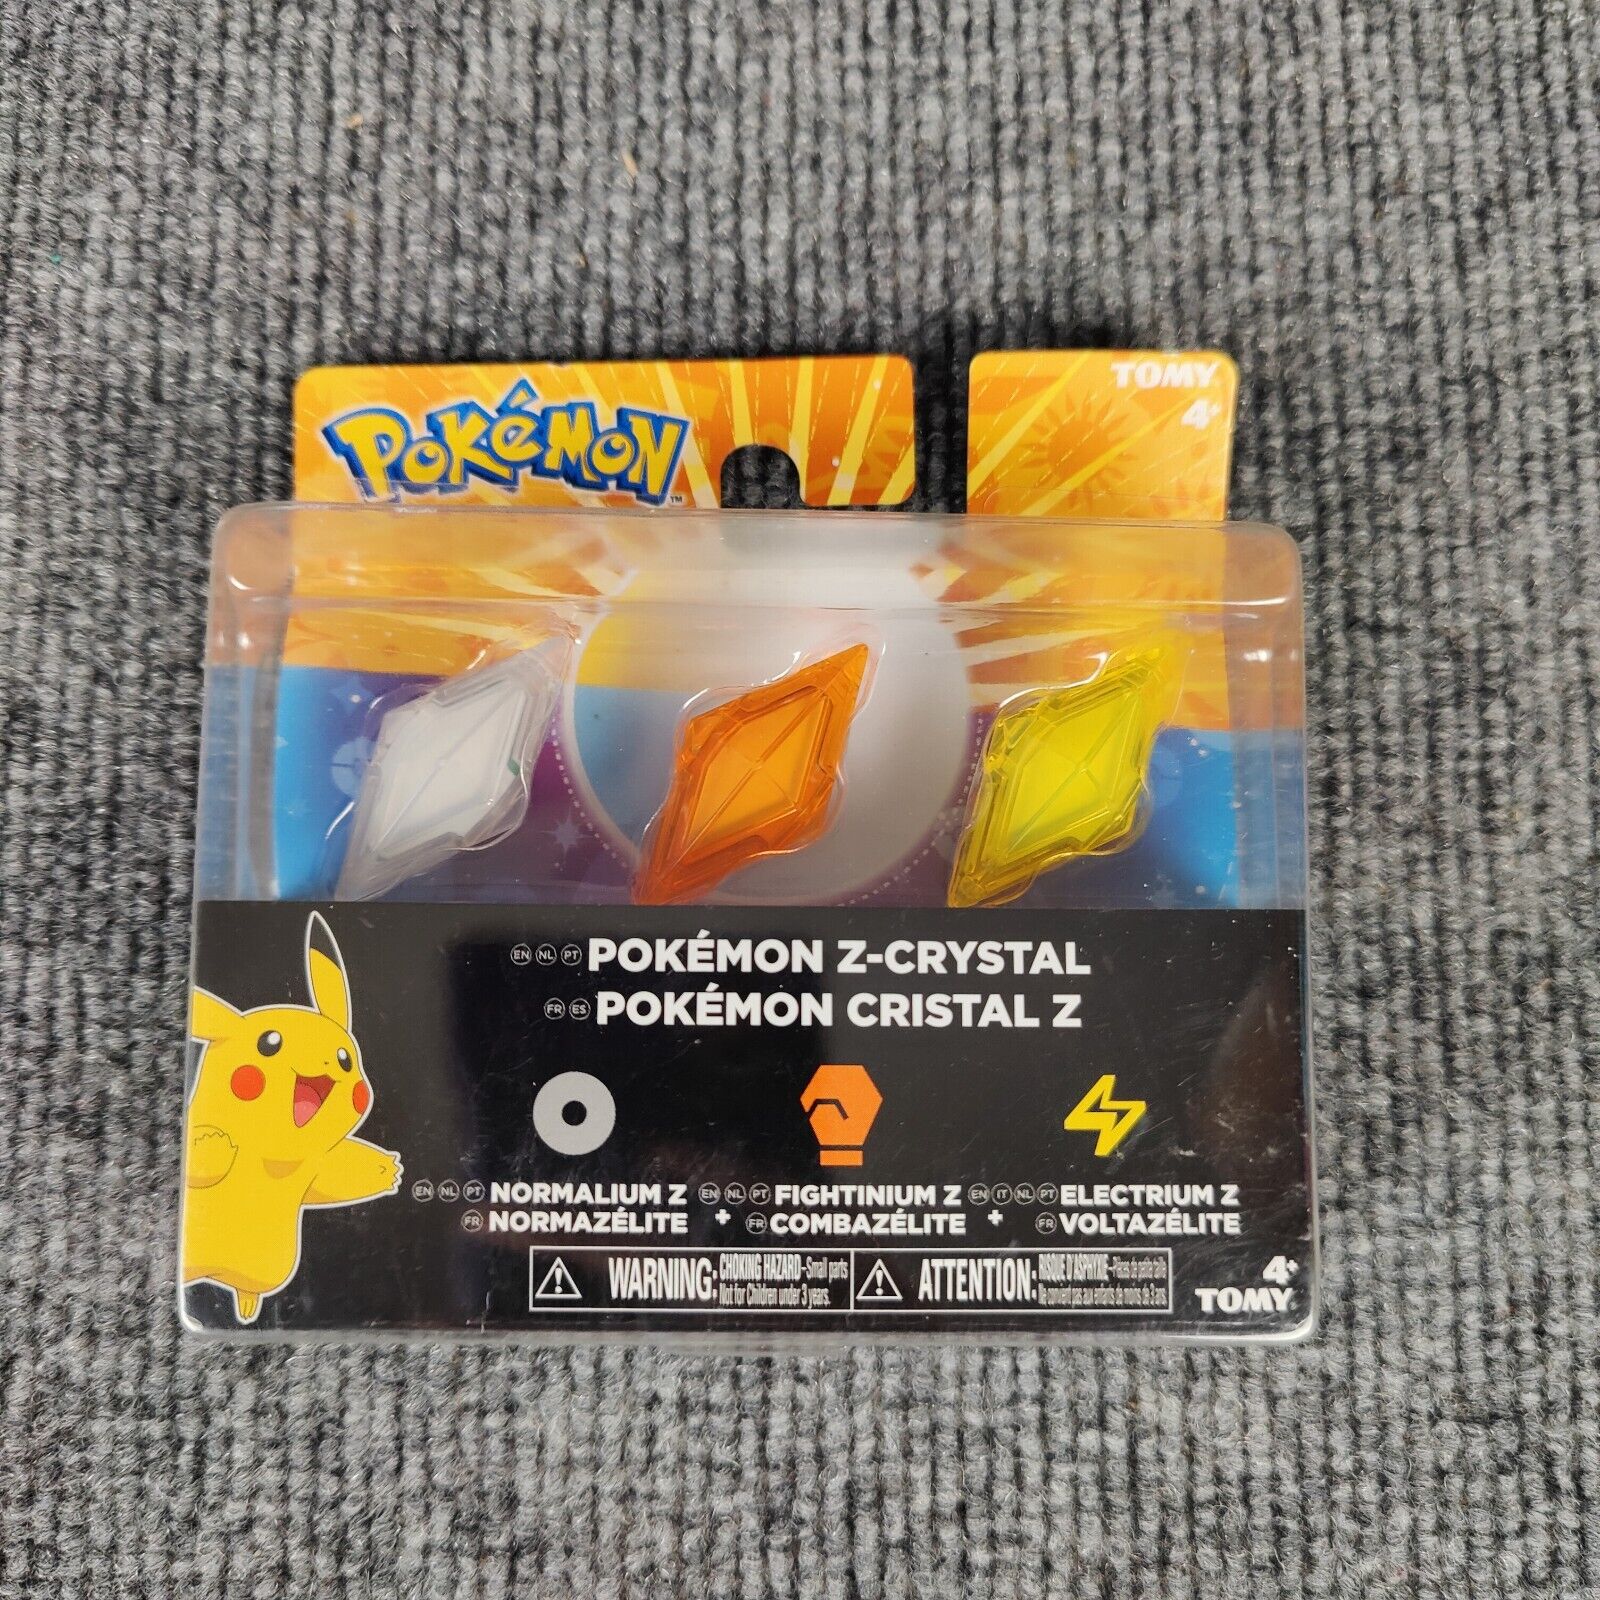 Tomy Pokemon Z-Crystal 3-Pack Normalium Z, Fightinium Z, Electrium Z New Sealed 